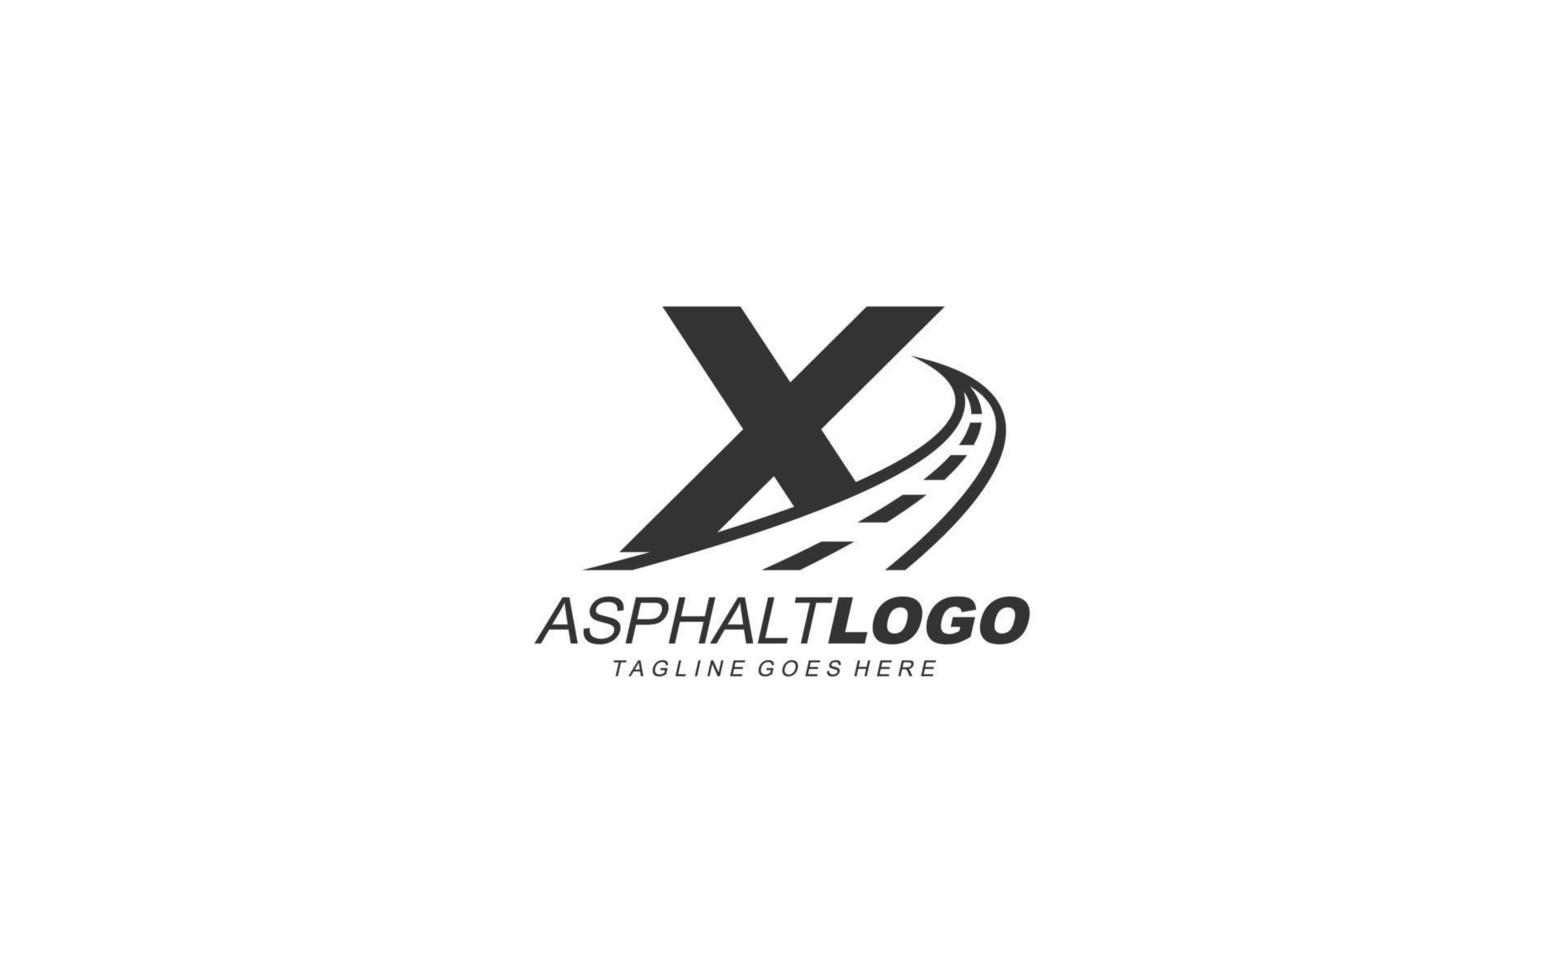 x logo asfalto para identidad. ilustración de vector de plantilla de construcción para su marca.